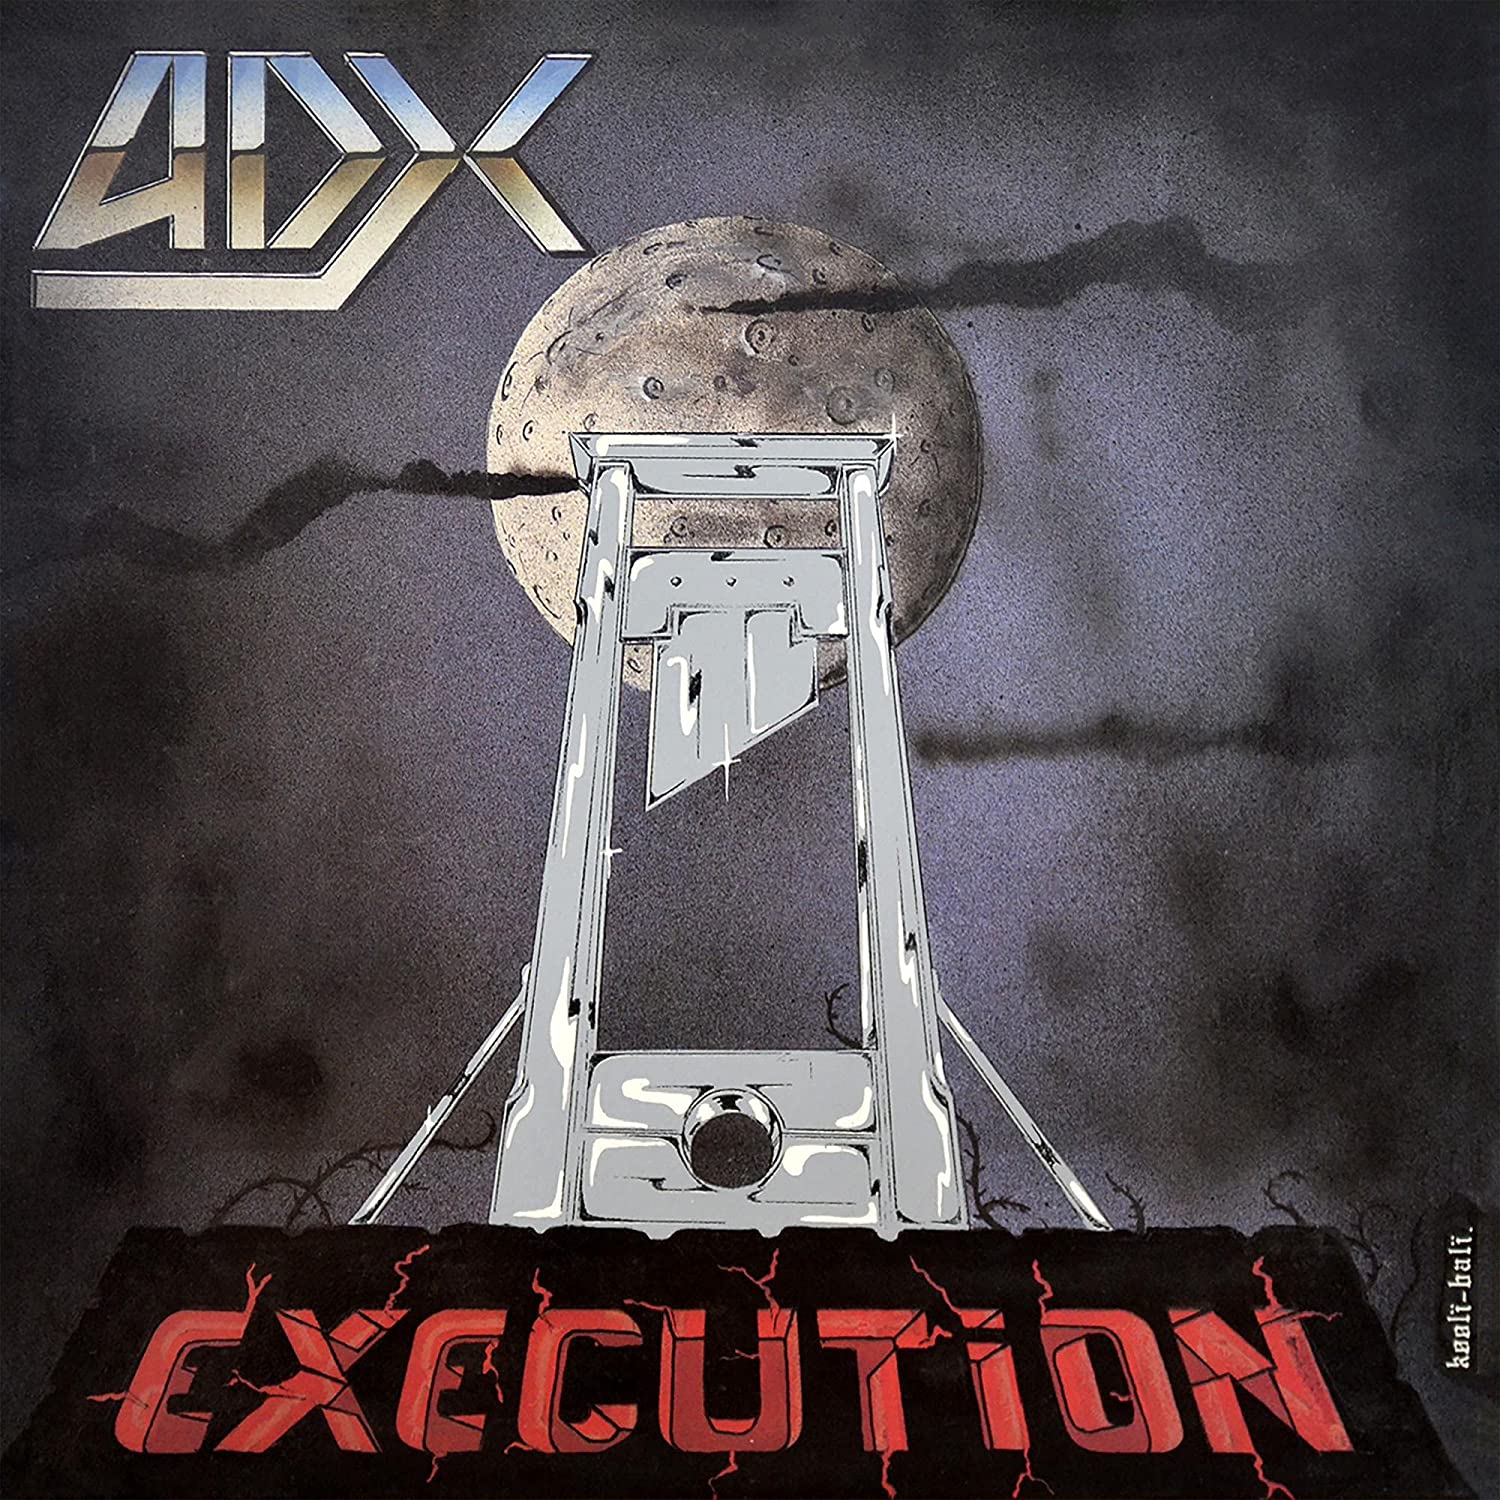 Album associé à la Furie par La Furieuse. ADX - Execution